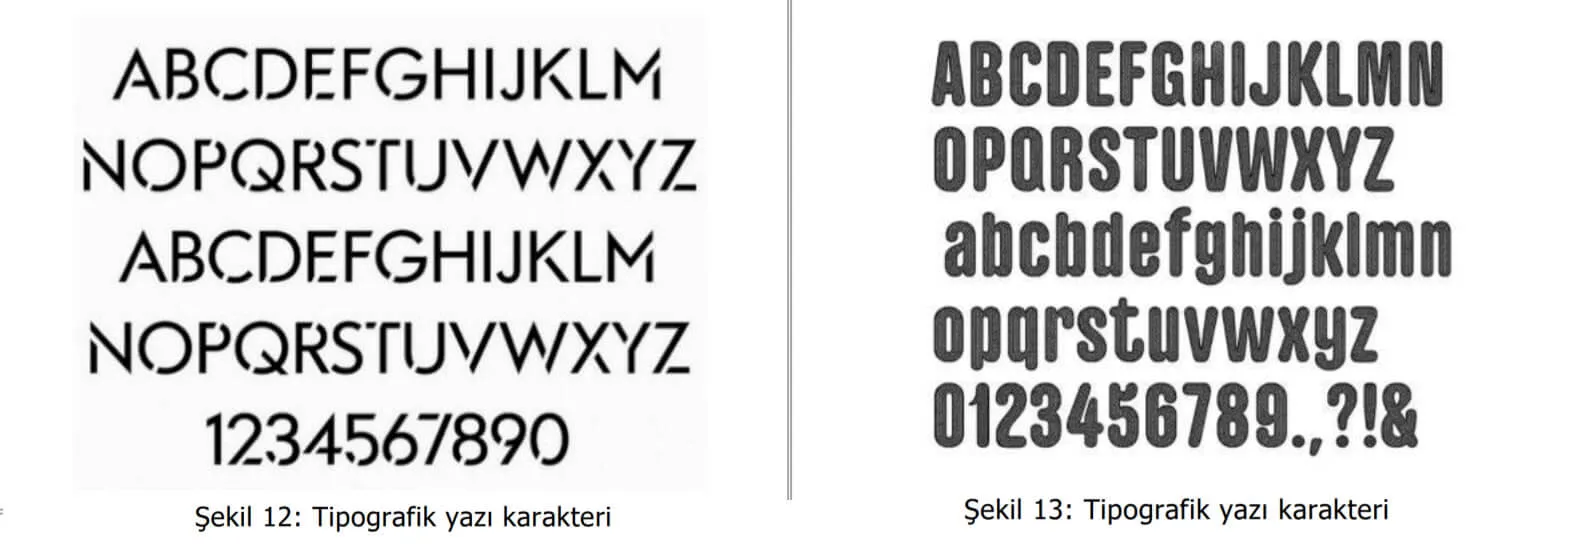 tipografik yazı karakter örnekleri-hatay marka tescil